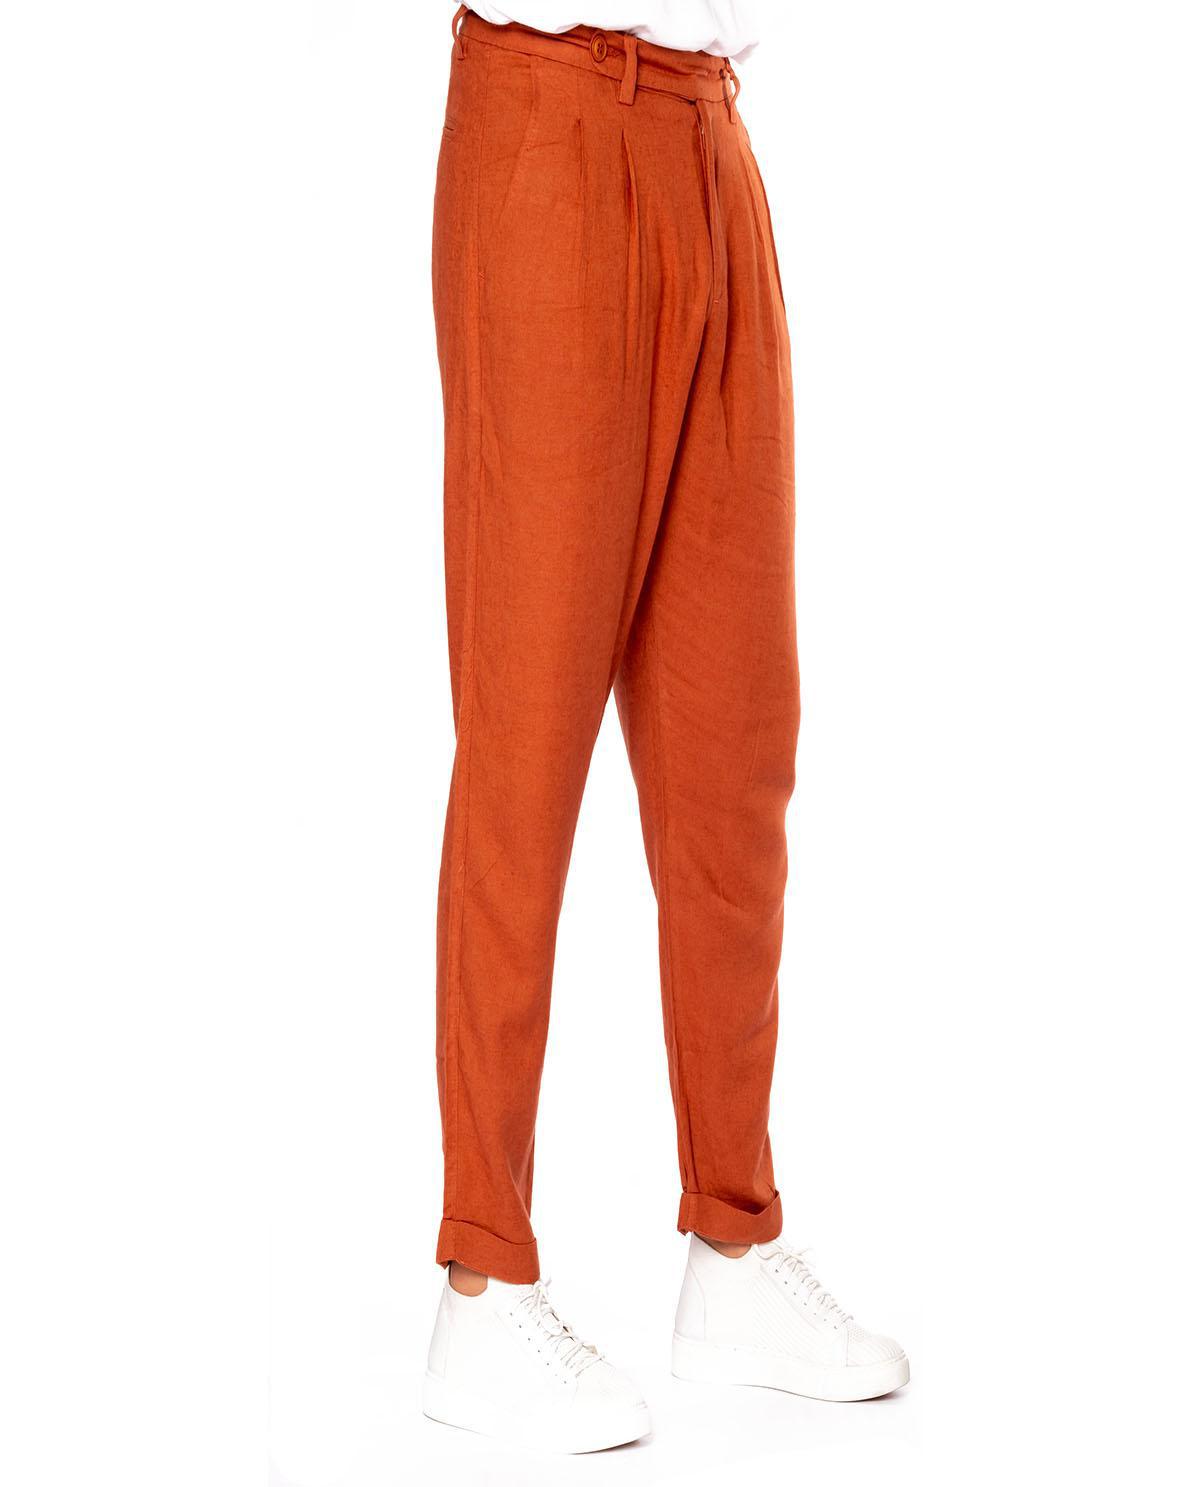 Pantalon orange  à doubles pinces en lin